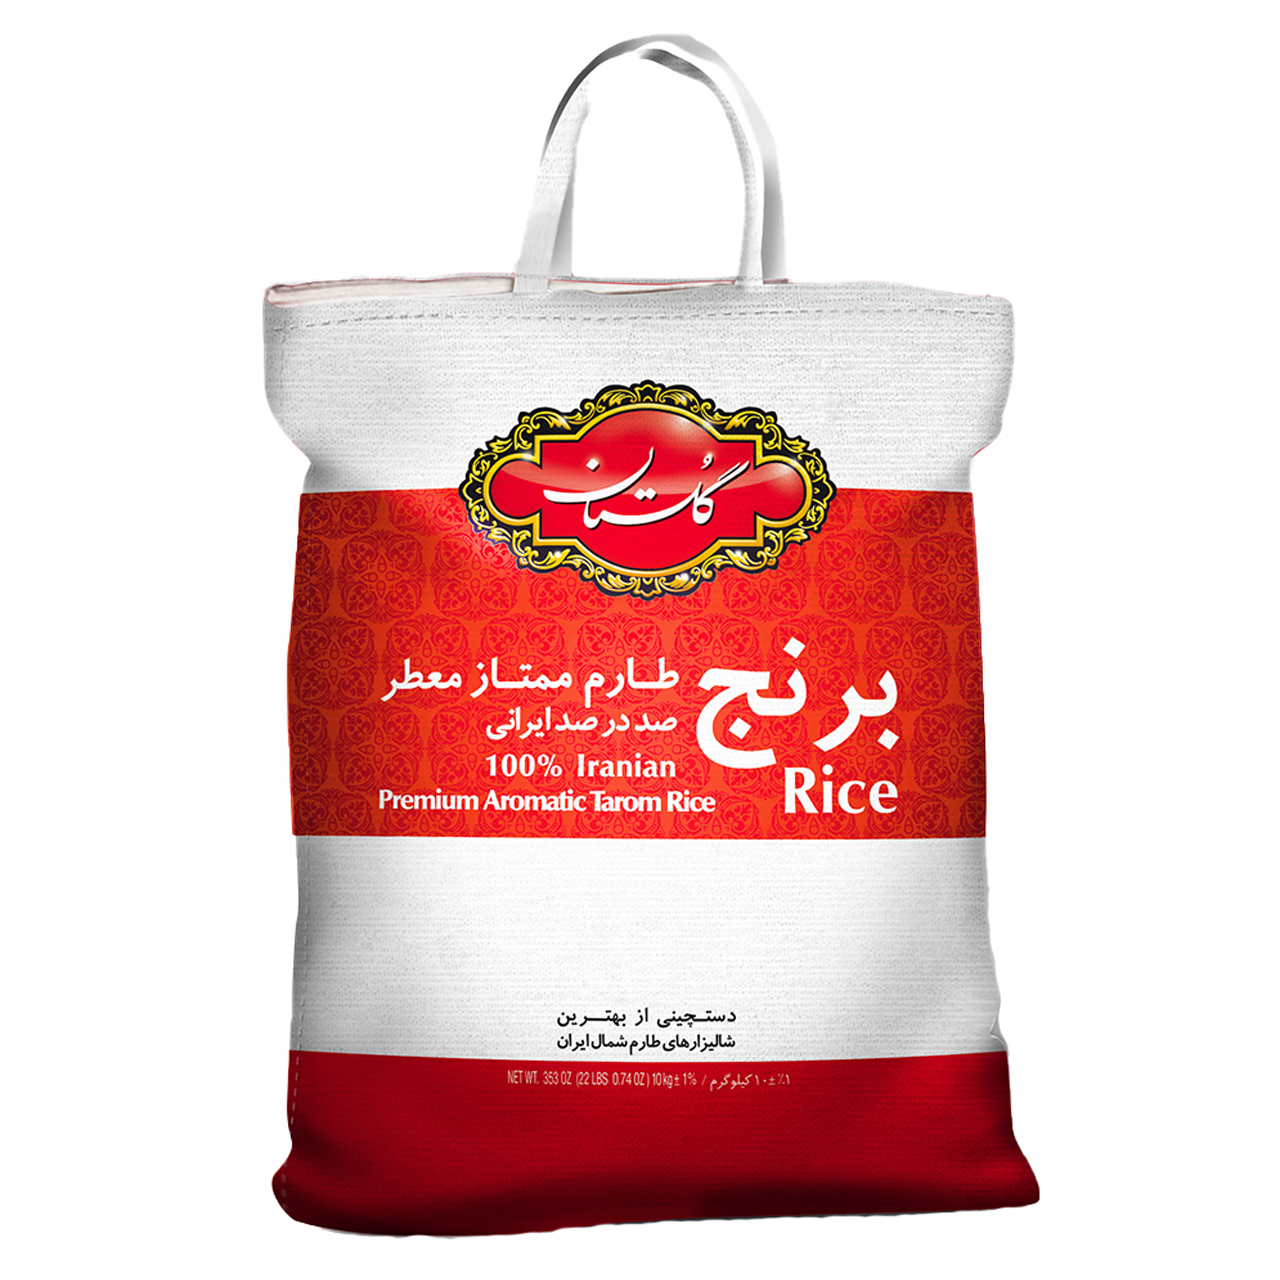 نکته خرید - قیمت روز برنج طارم ممتاز گلستان - 10 کیلوگرم خرید